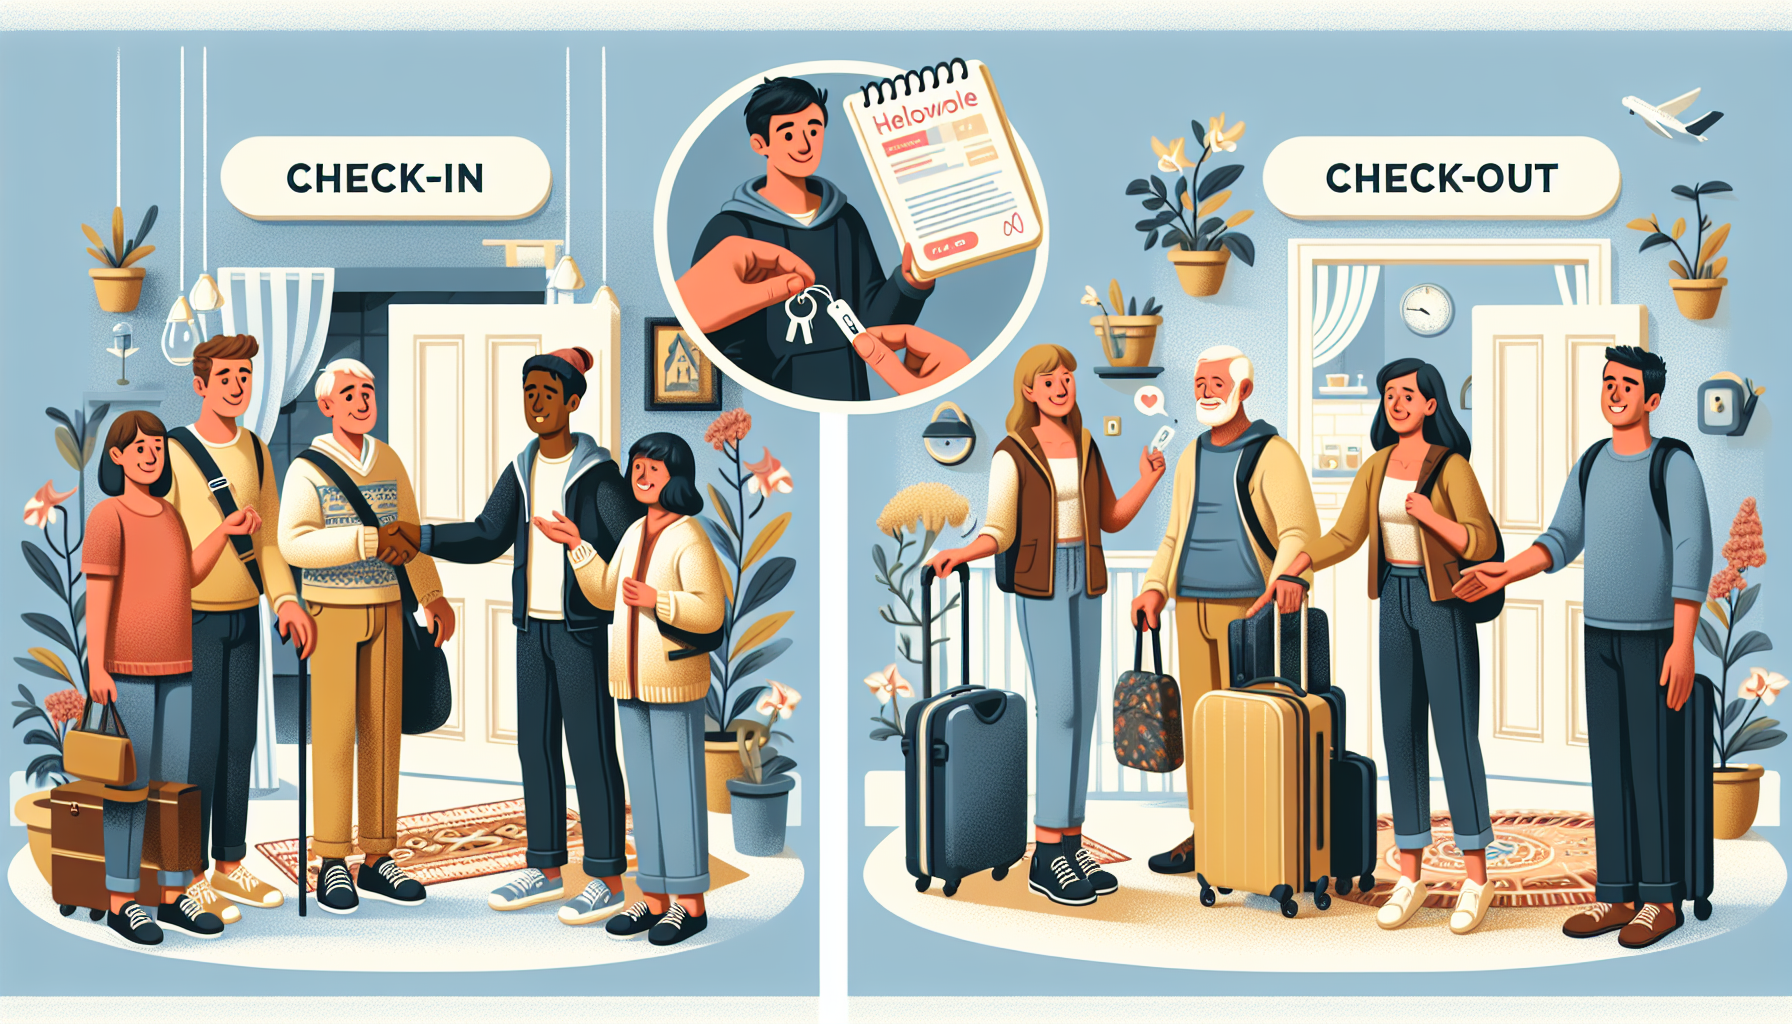 découvrez le processus de check-in et check-out pour les locations airbnb et apprenez comment ils fonctionnent.